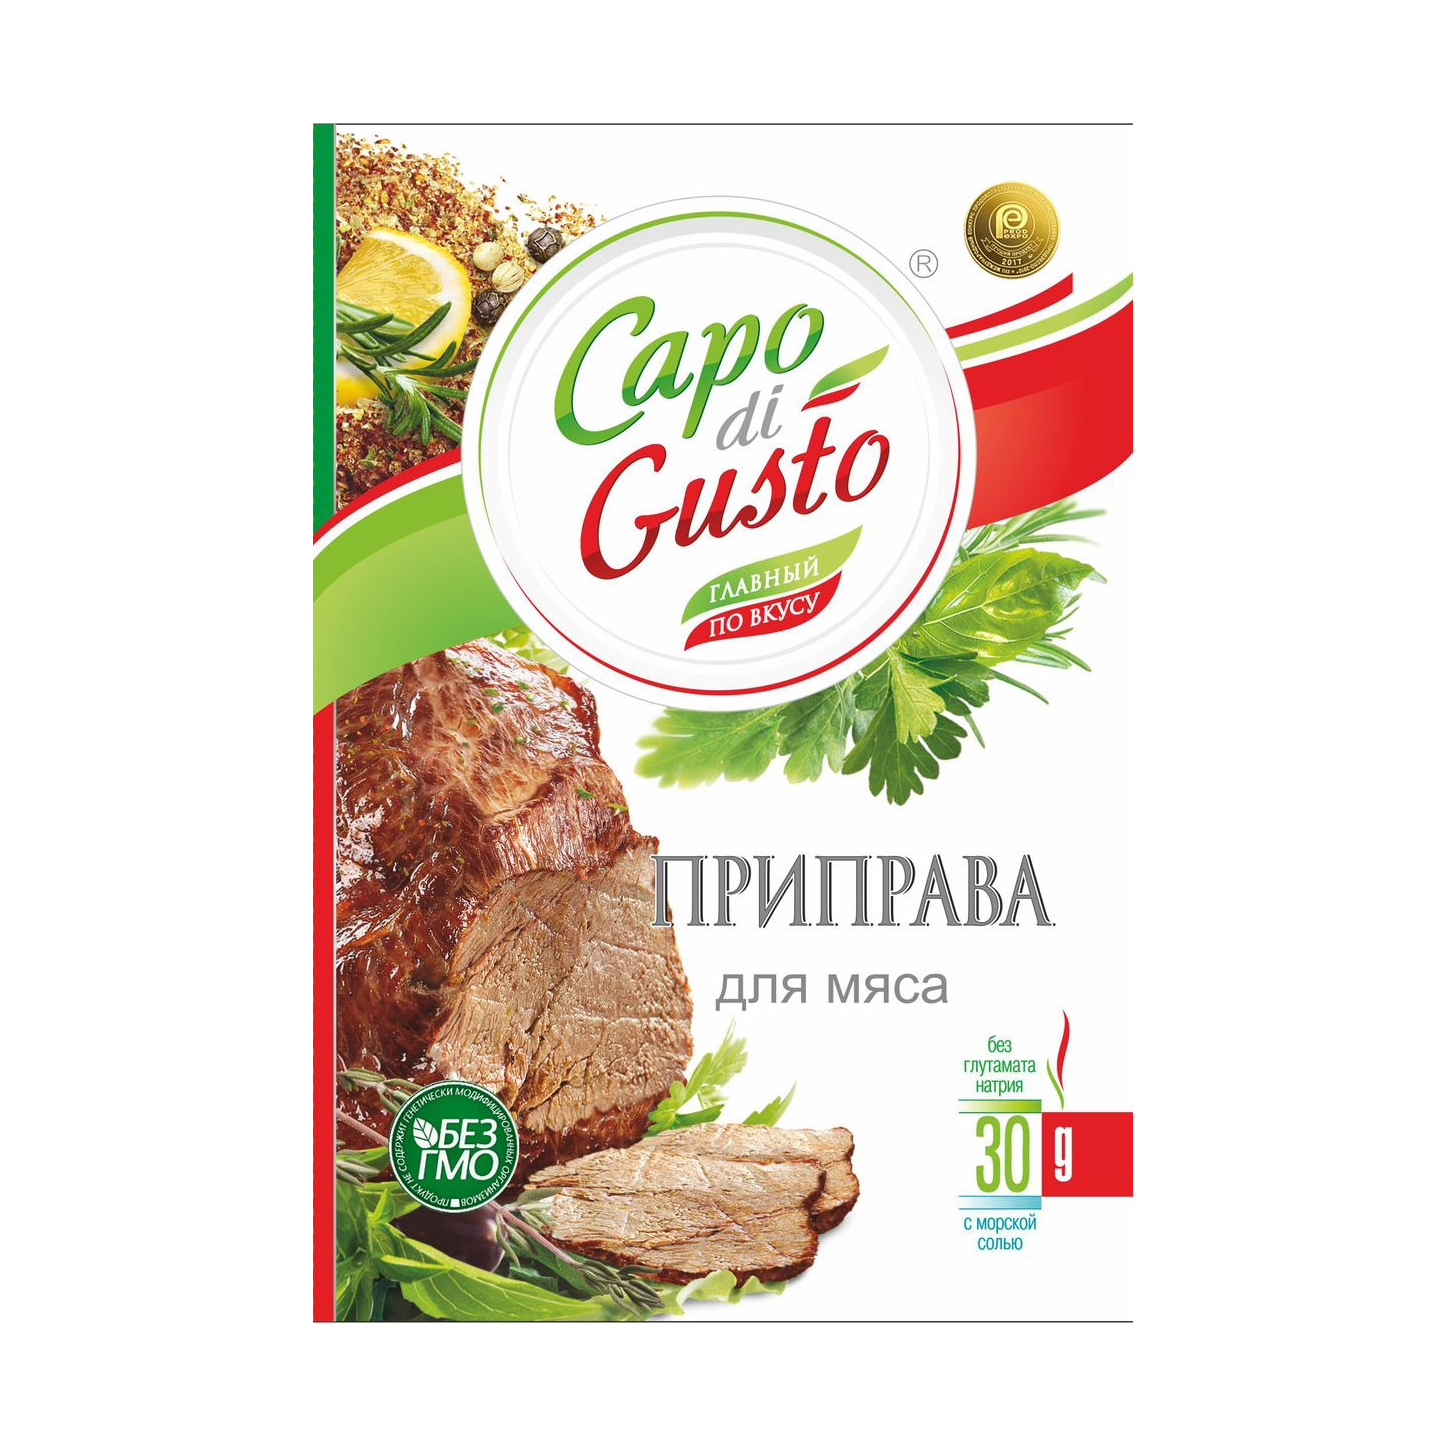 Приправа Capo di Gusto для мяса 30 г приправа для мяса глобус 30 г